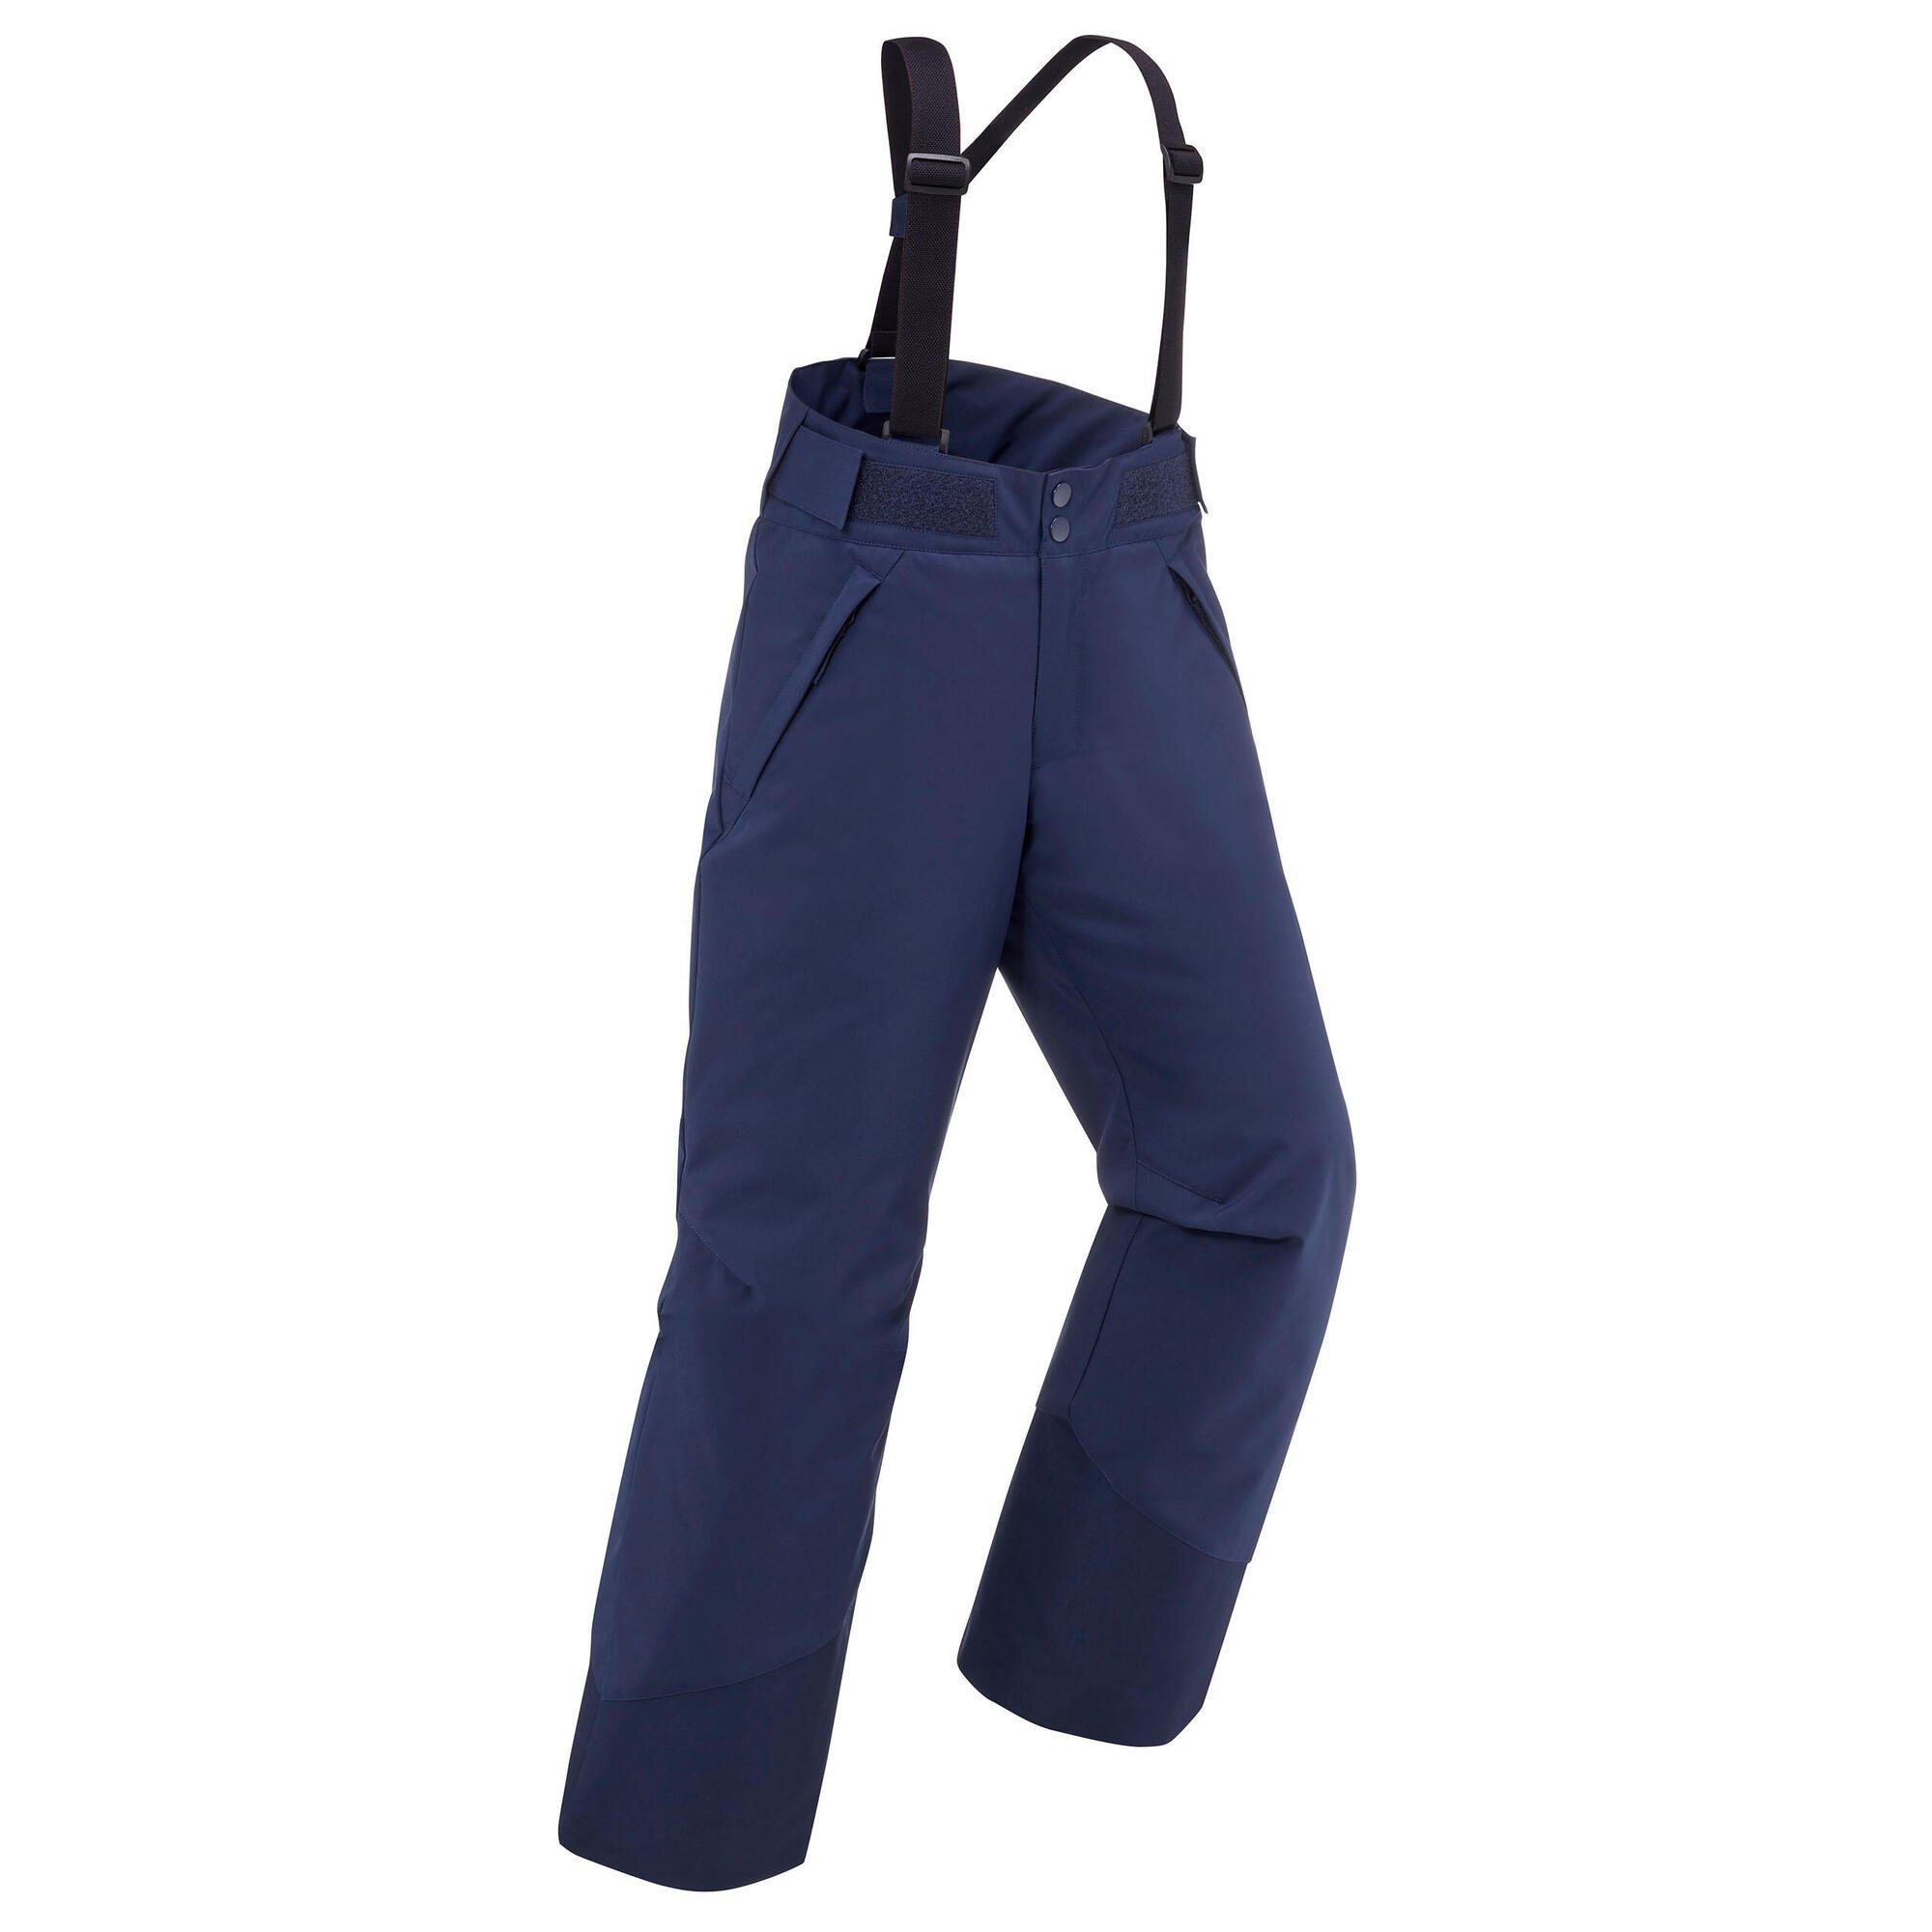 Теплые и водонепроницаемые лыжные брюки Decathlon -500 Pnf- Сосна Wedze, синий фото